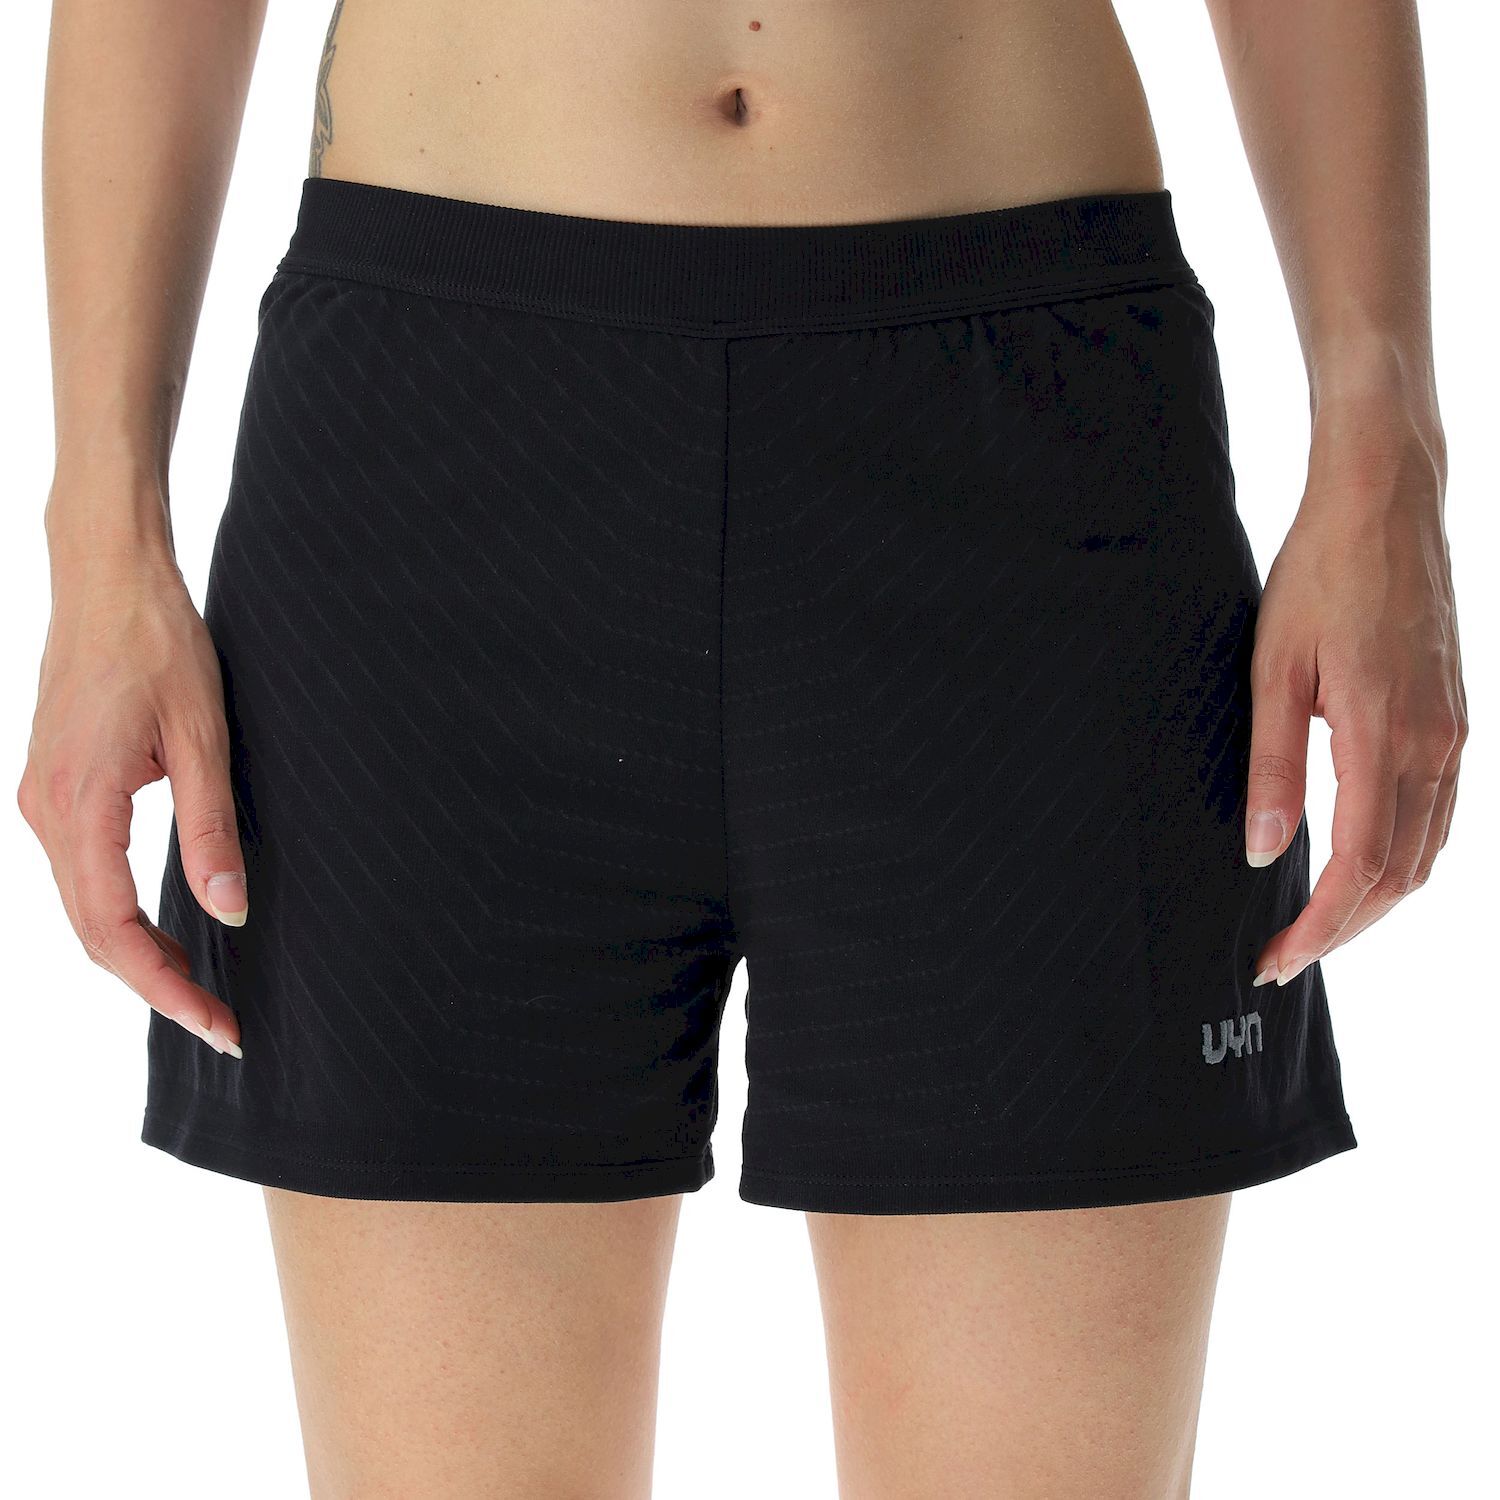 Uyn Running PB42 Ow Pants Short - Running shorts - Women's